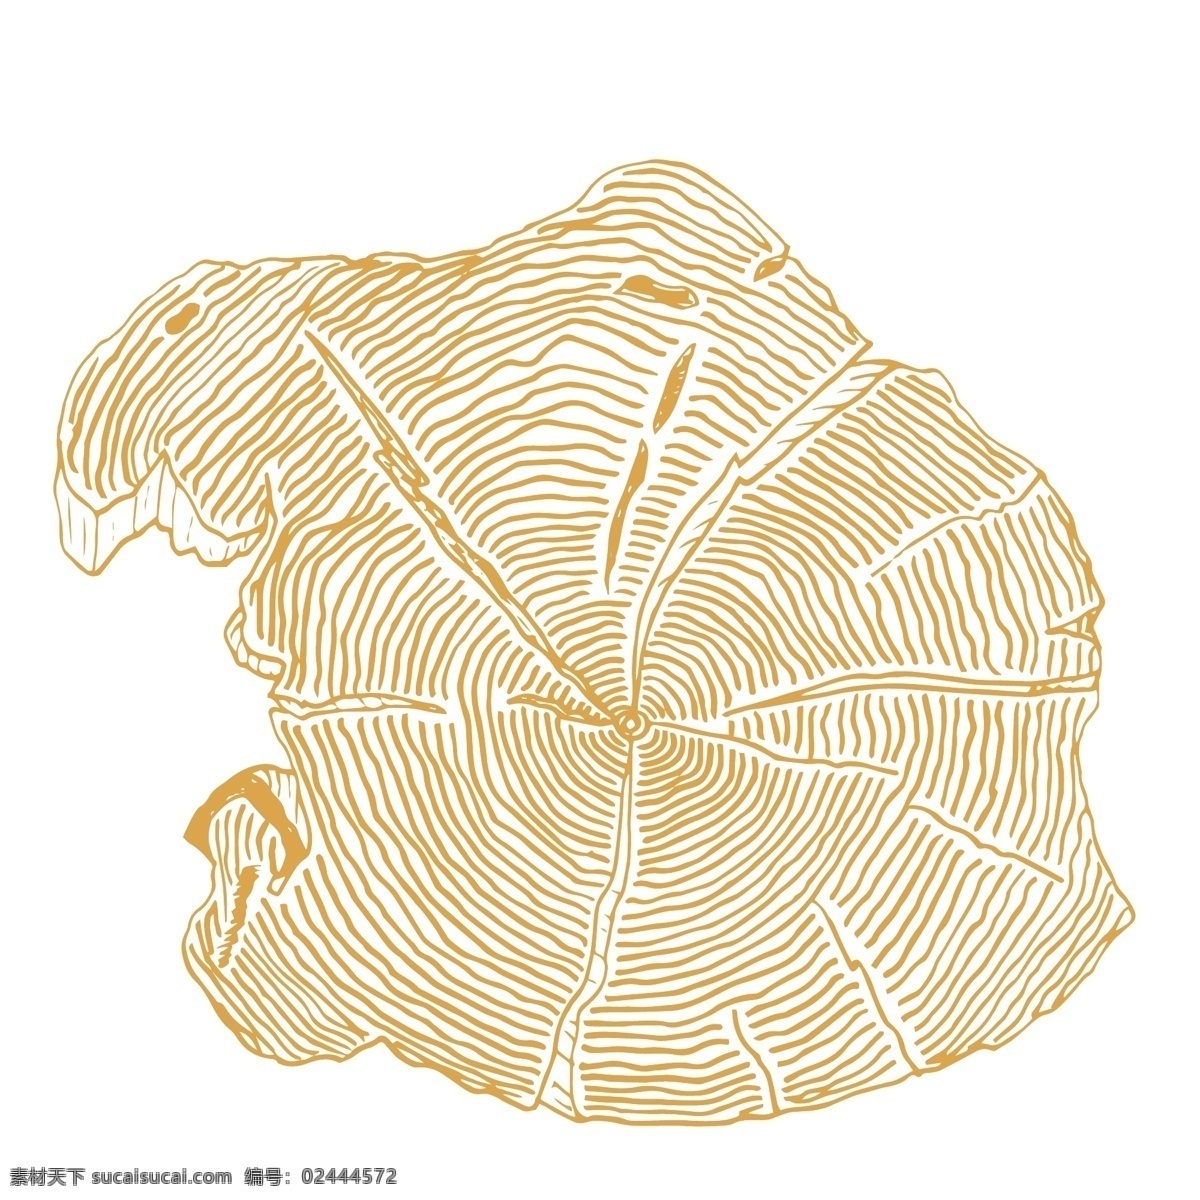 年轮 木纹 装饰 图案 树木 纹理 植物 线条 抽象 圆圈 绘画简笔 雕刻纹理